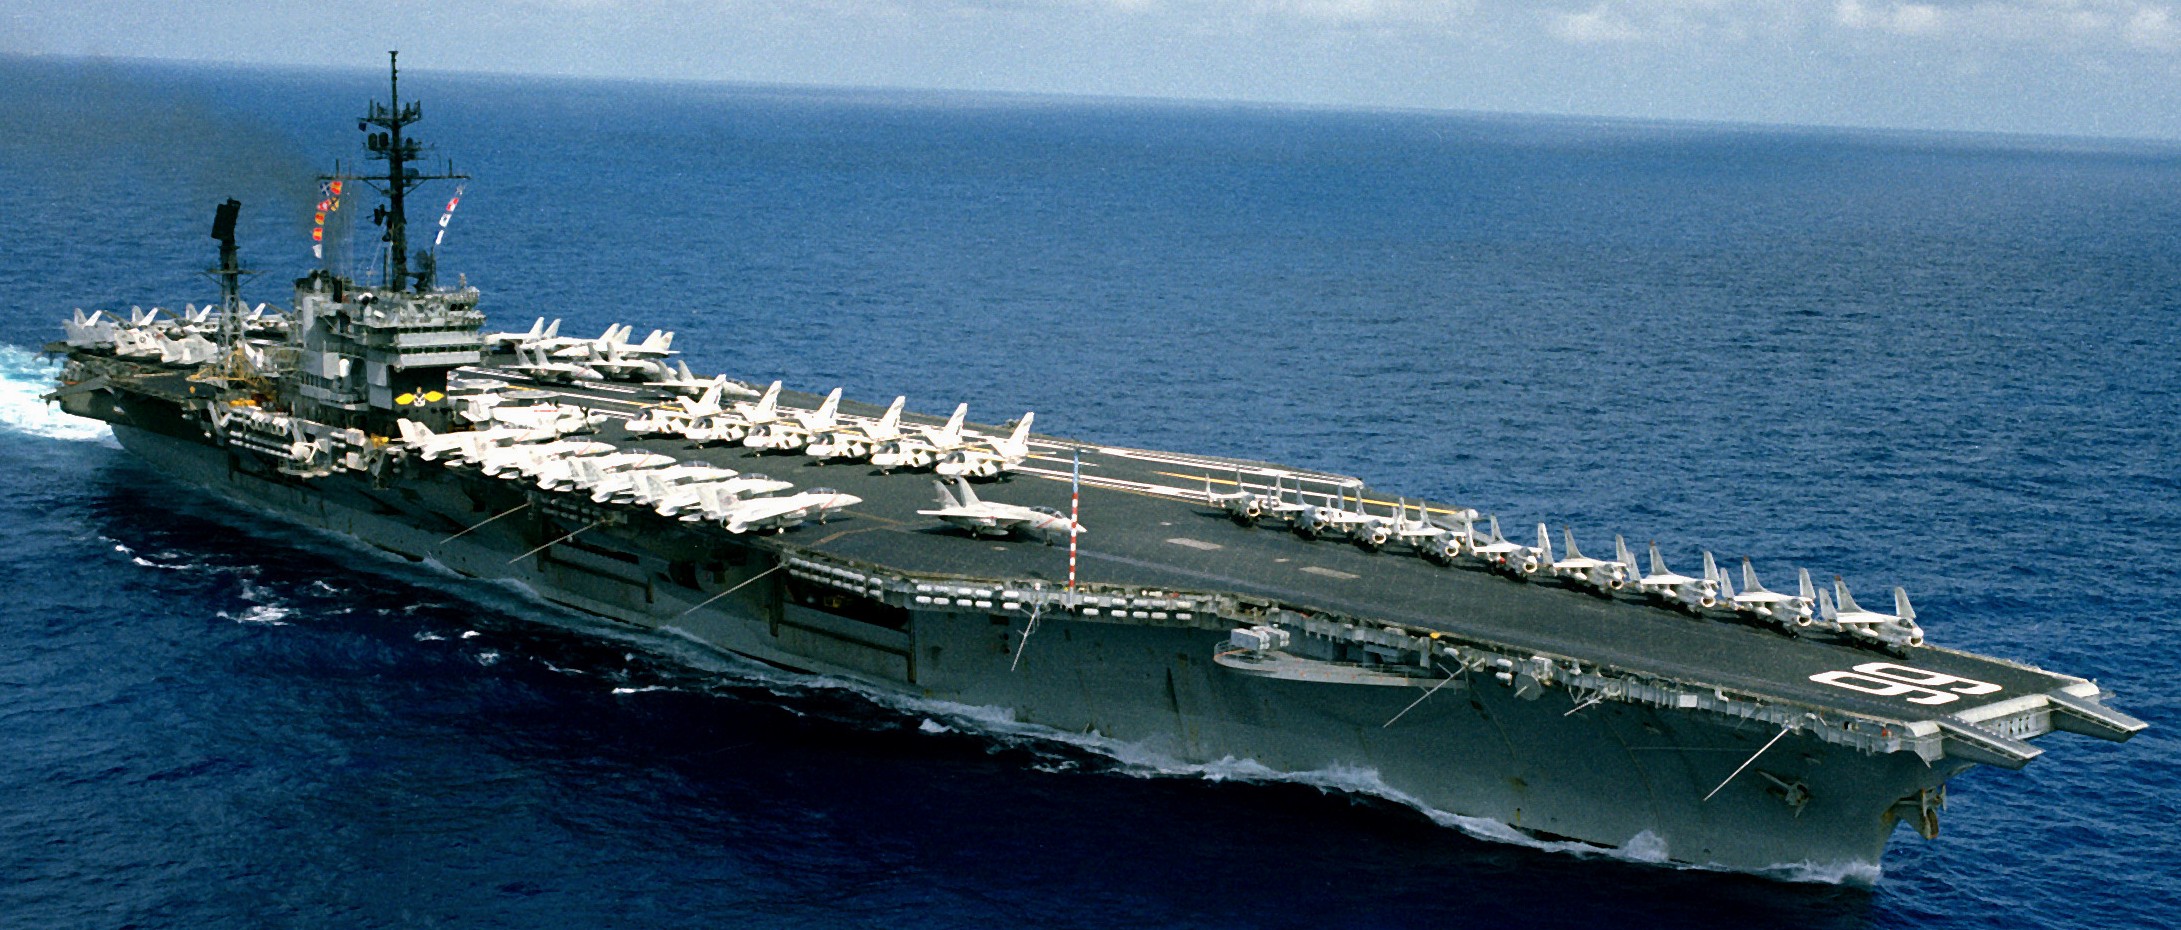 cv-66 uss america kitty hawk class aircraft carrier air wing cvw-1 us navy 52